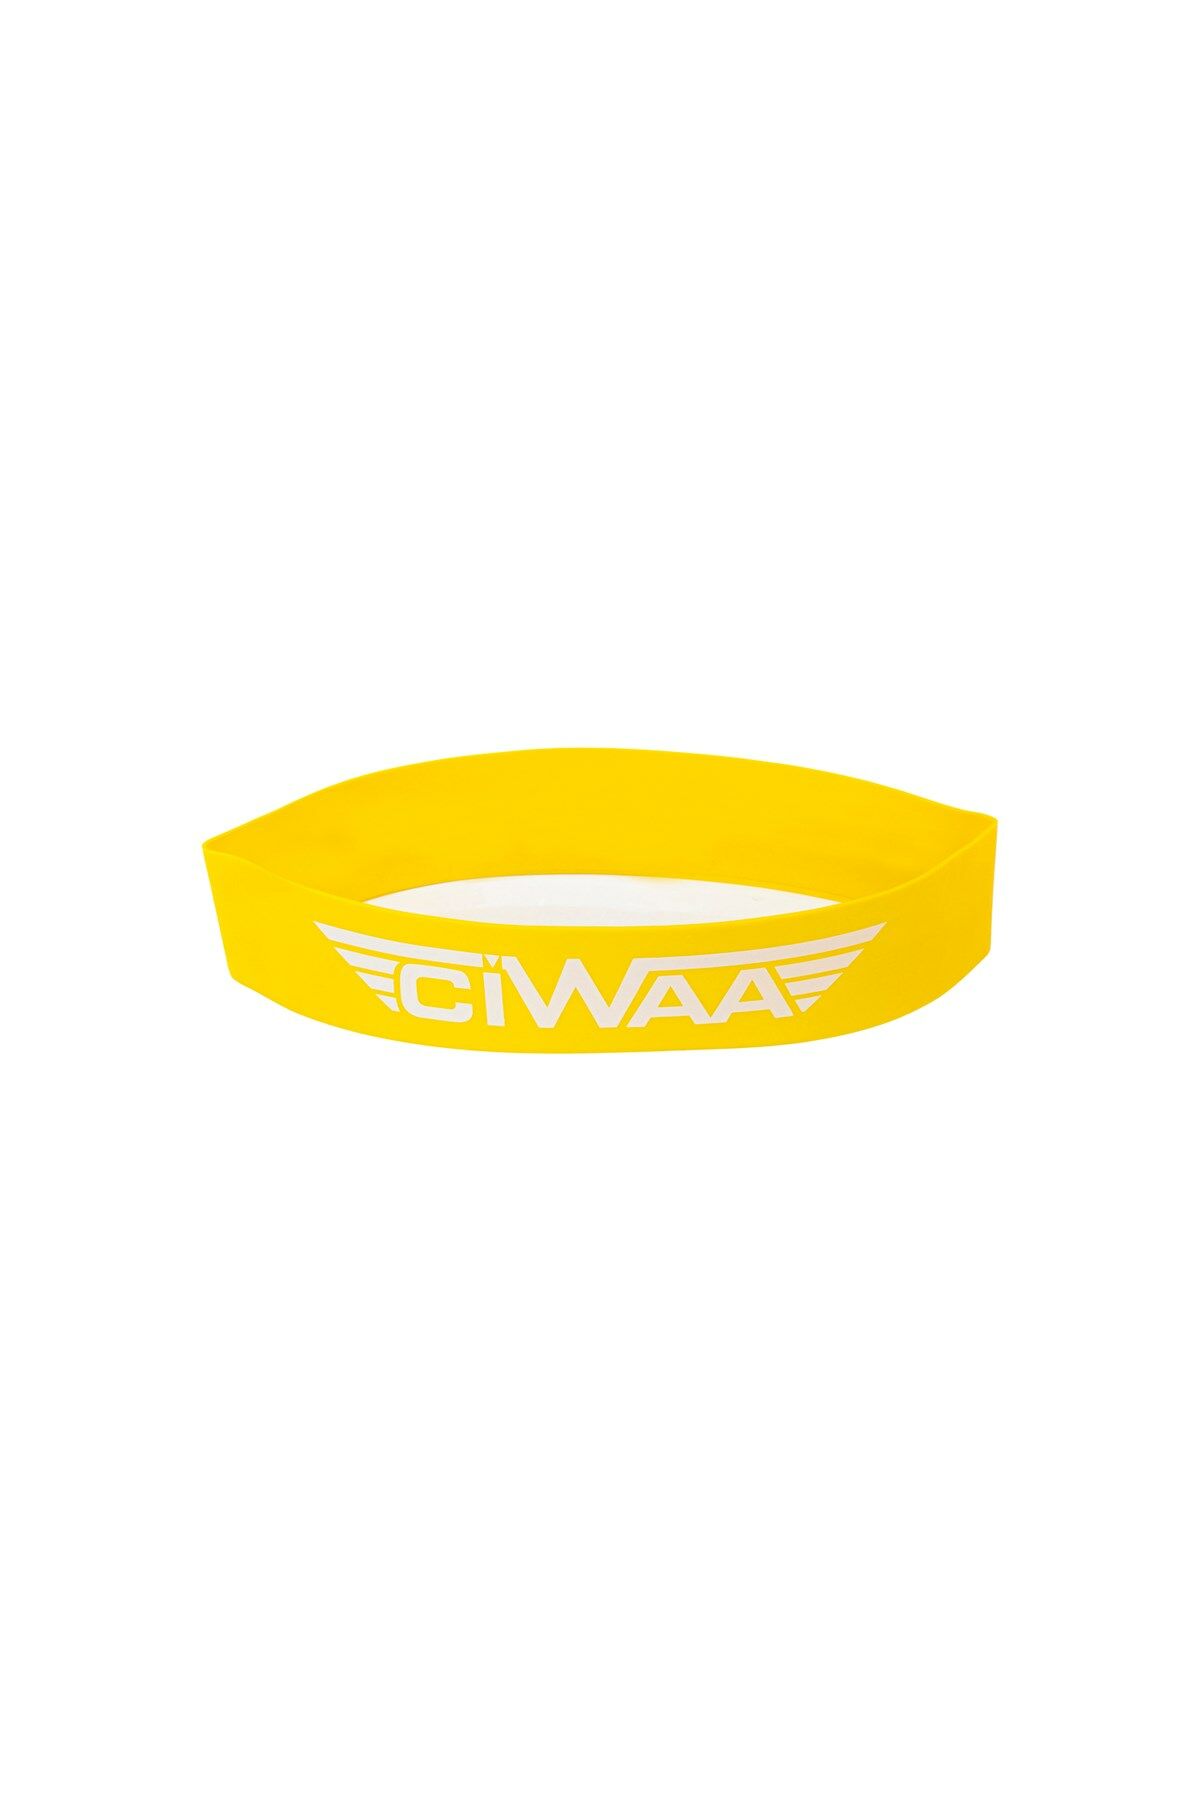 Ciwaa Cwa-2012 Latex Aerobik Bandı Orta Sert Sarı